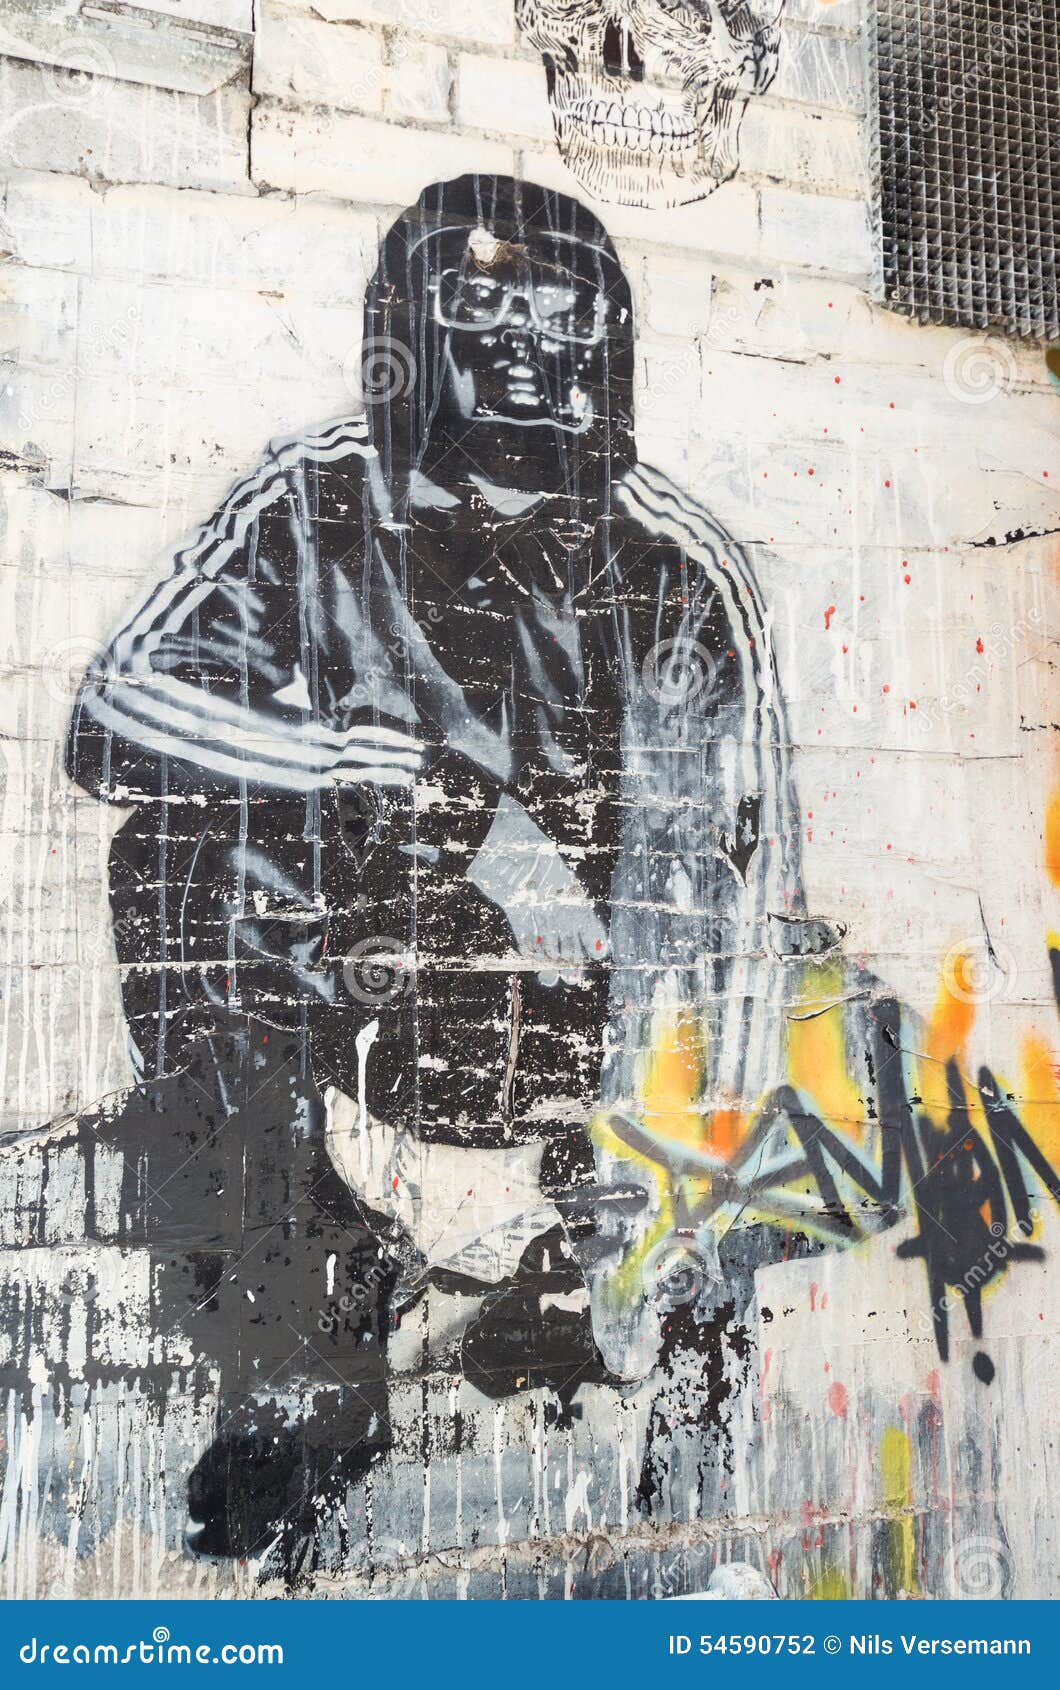 Straßenkunst durch einen unbekannten Künstler in Collingwood, Melbourne. Straßenkunst durch einen unbekannten Künstler im Melbourne, Australien Innenstadtvorort von Collingwood, am 8. Februar 2015